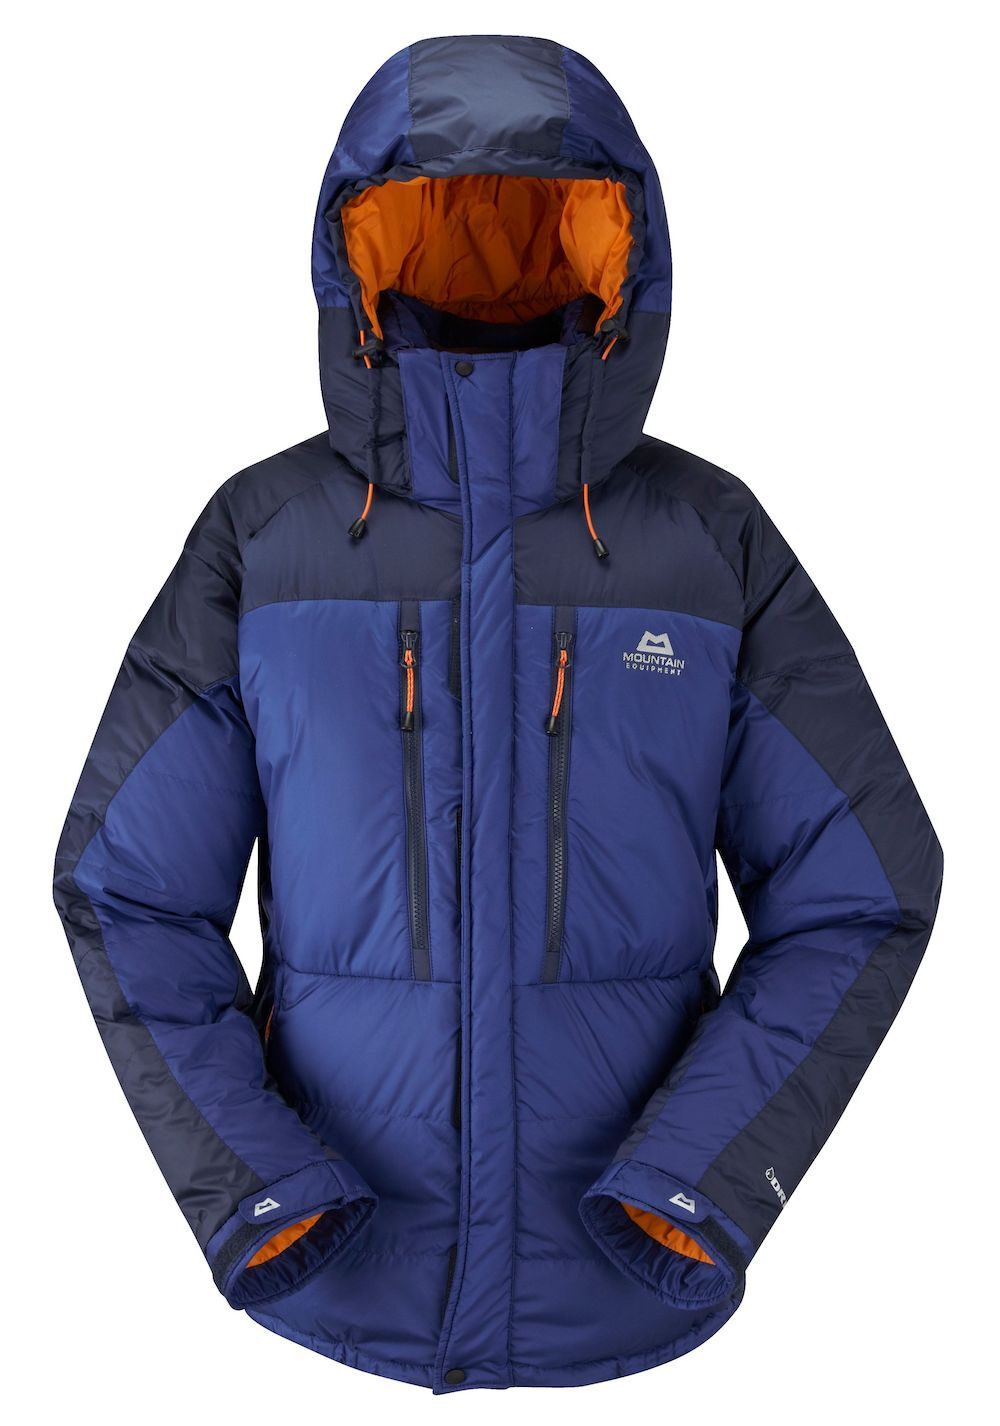 Mountain Equipment Annapurna Jacket - Giacca in piumino - Uomo